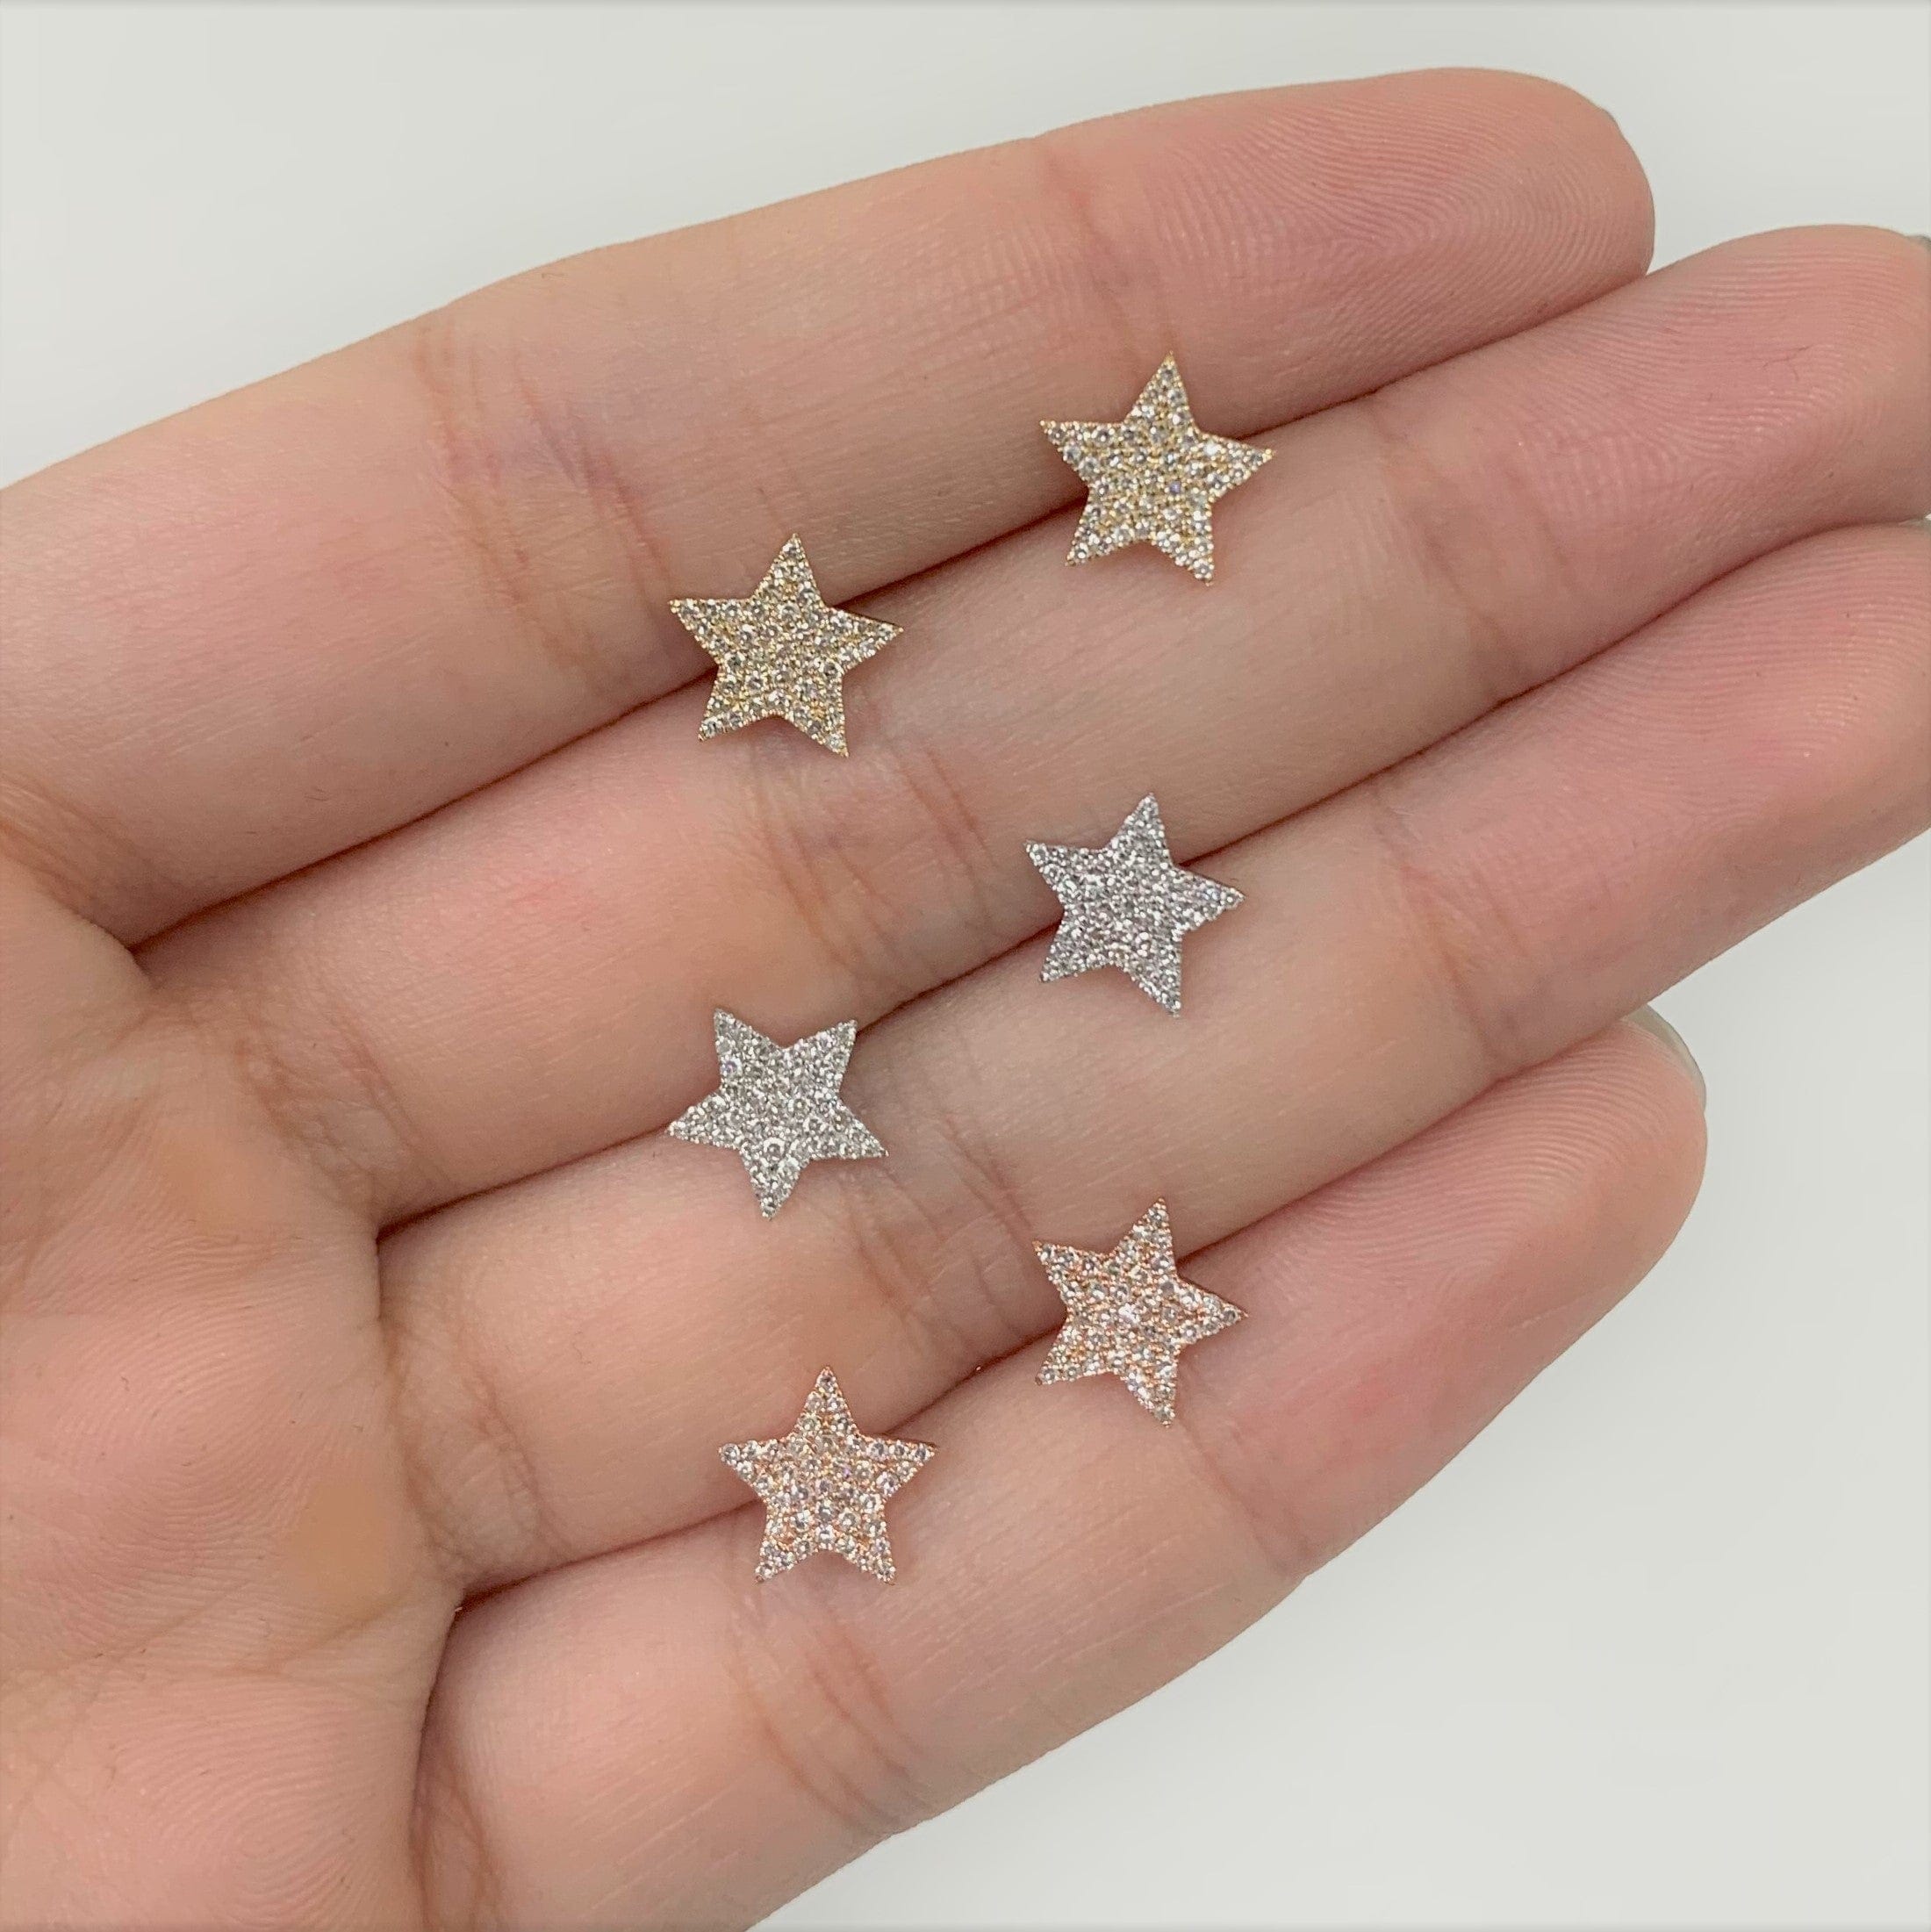 Diamond Star Earrings in 14k Yellow Gold 0.22 ctw